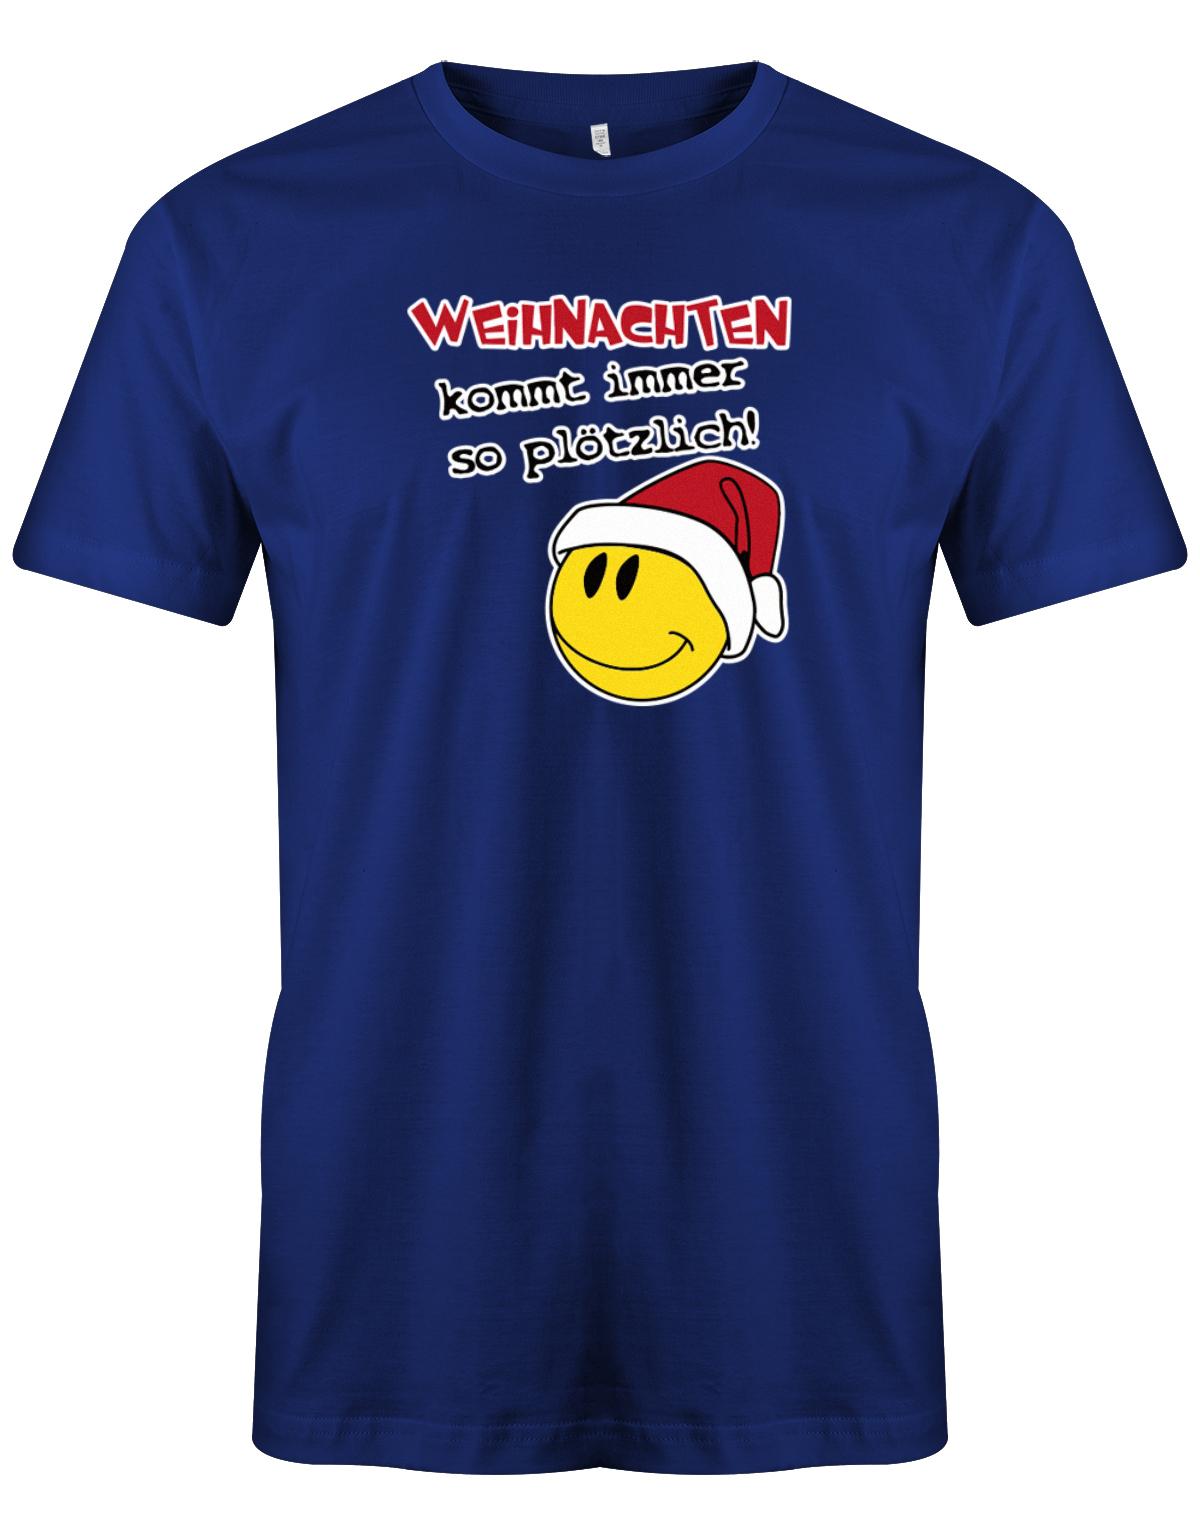 Weihnachten-kommt-immer-so-pl-tzlich-Herren-Shirt-Royalblau